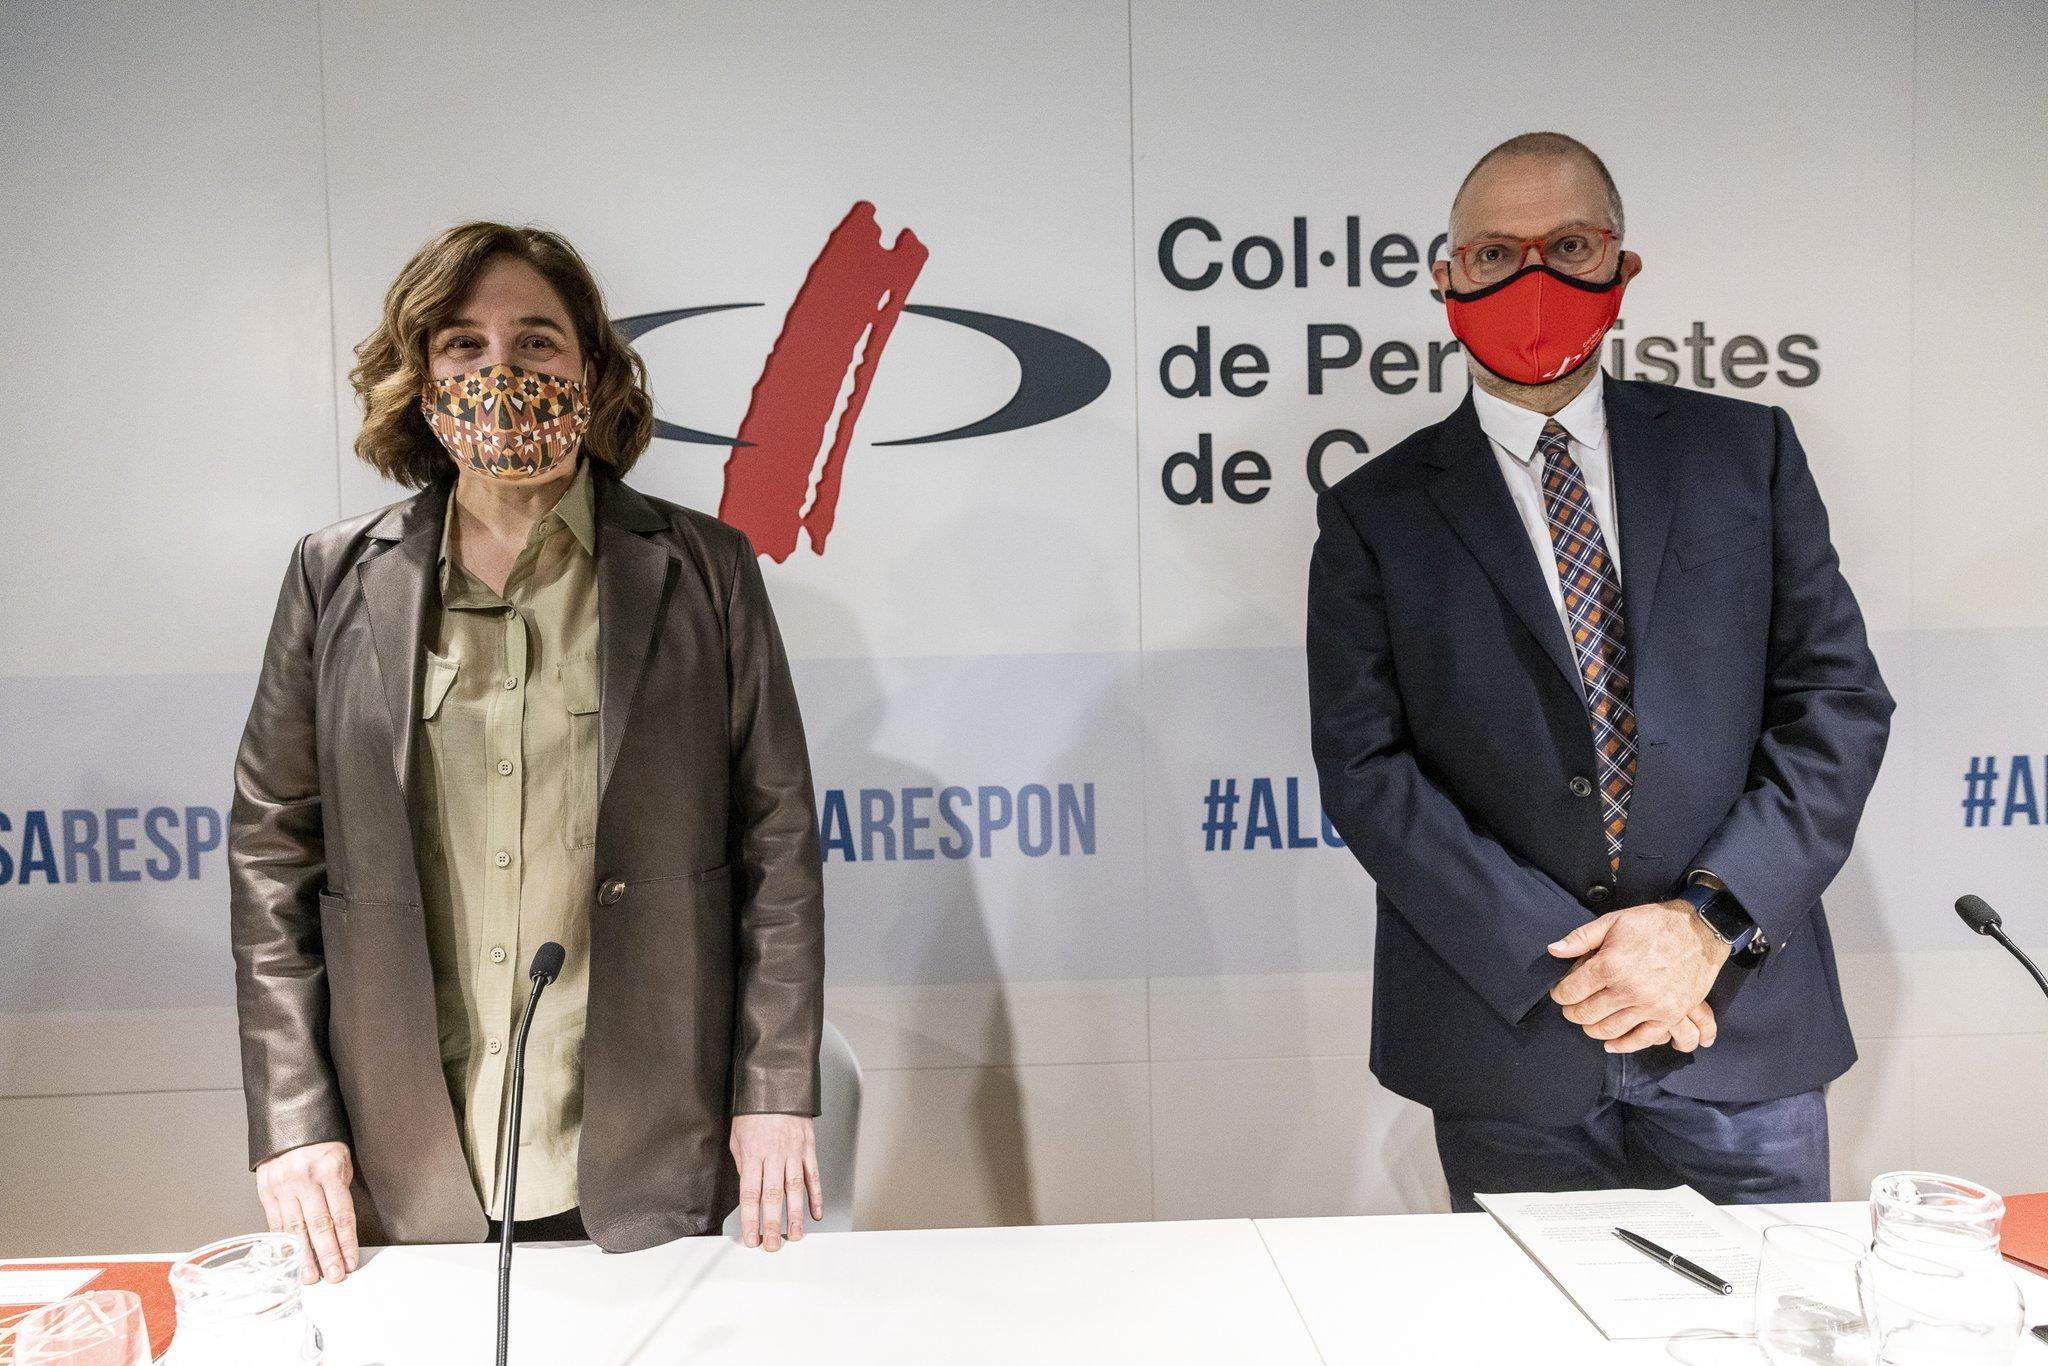 La alcaldesa de Barcelona, Ada Colau, en el acto del Col.legi de Periodistes / AYUNTAMIENTO DE BARCELONA (TWITTER)